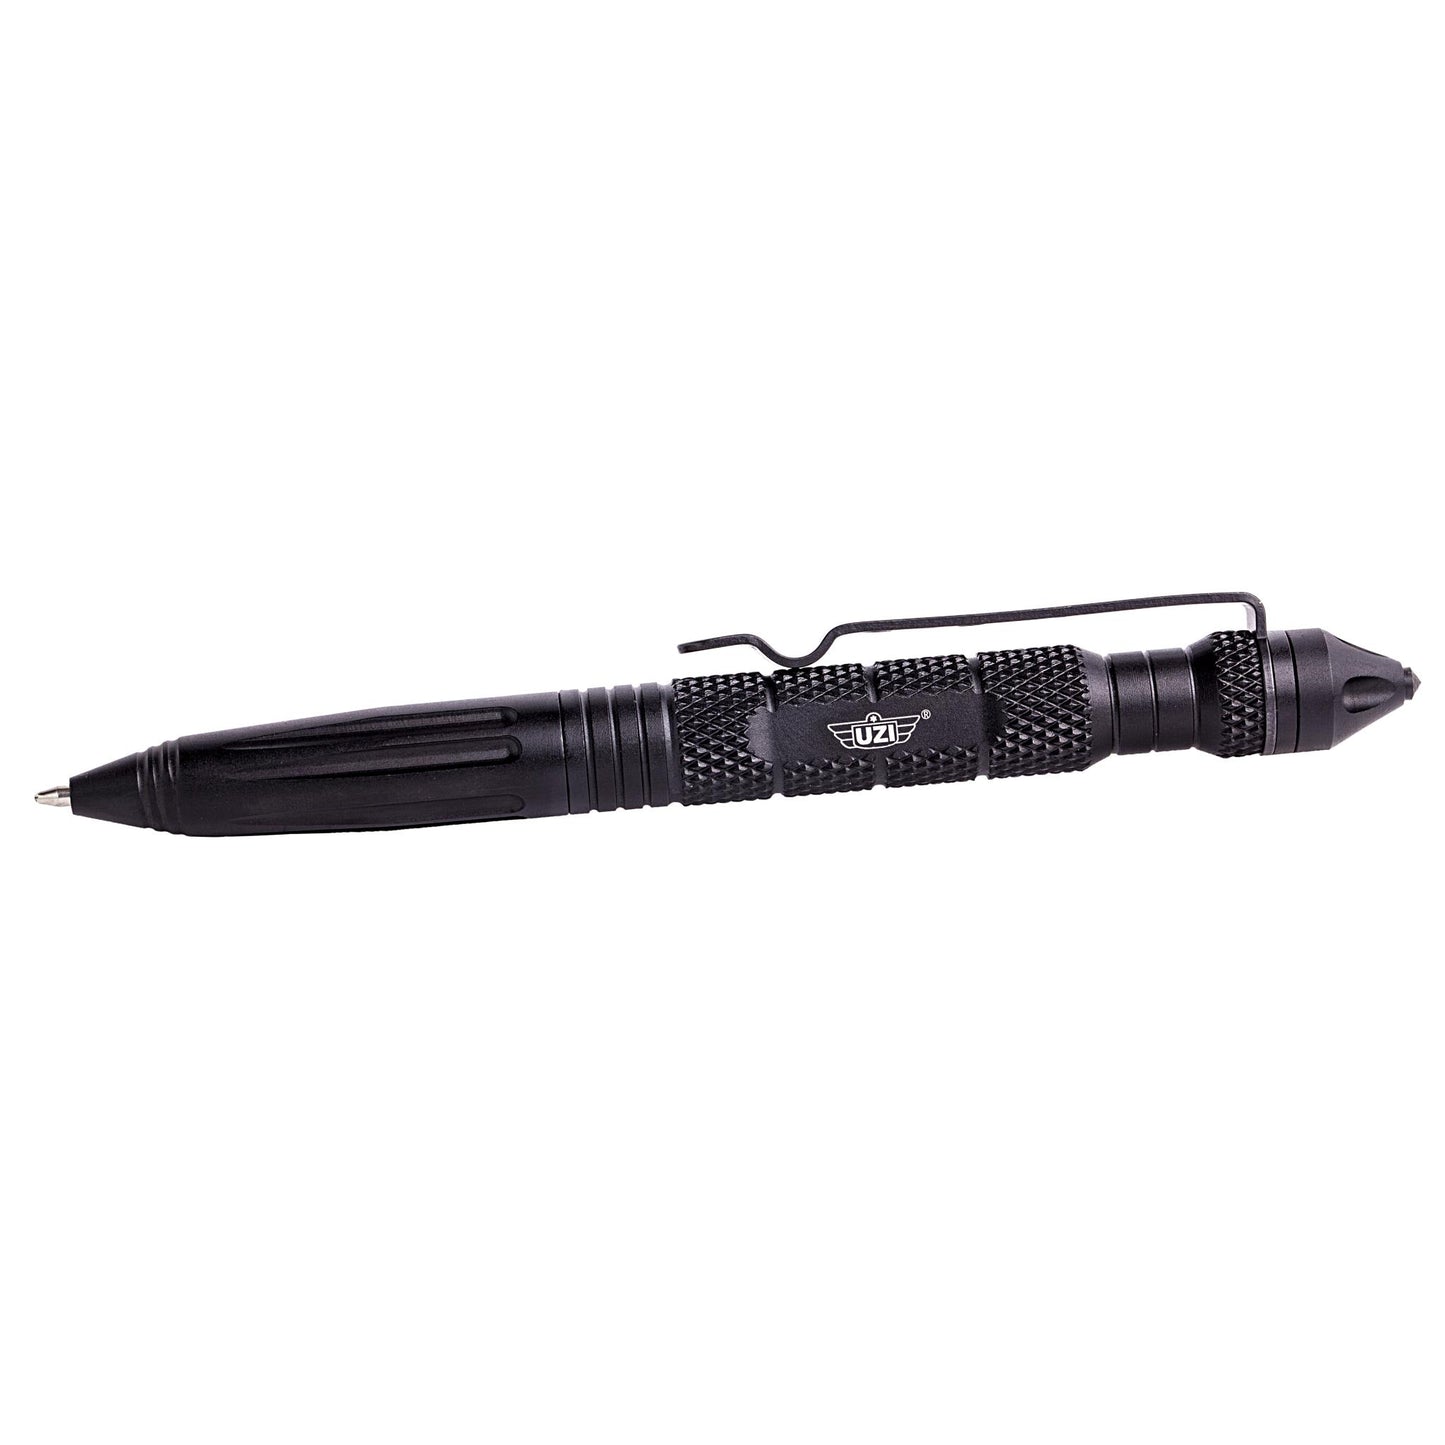 UZI Tactical Defender Pen #6